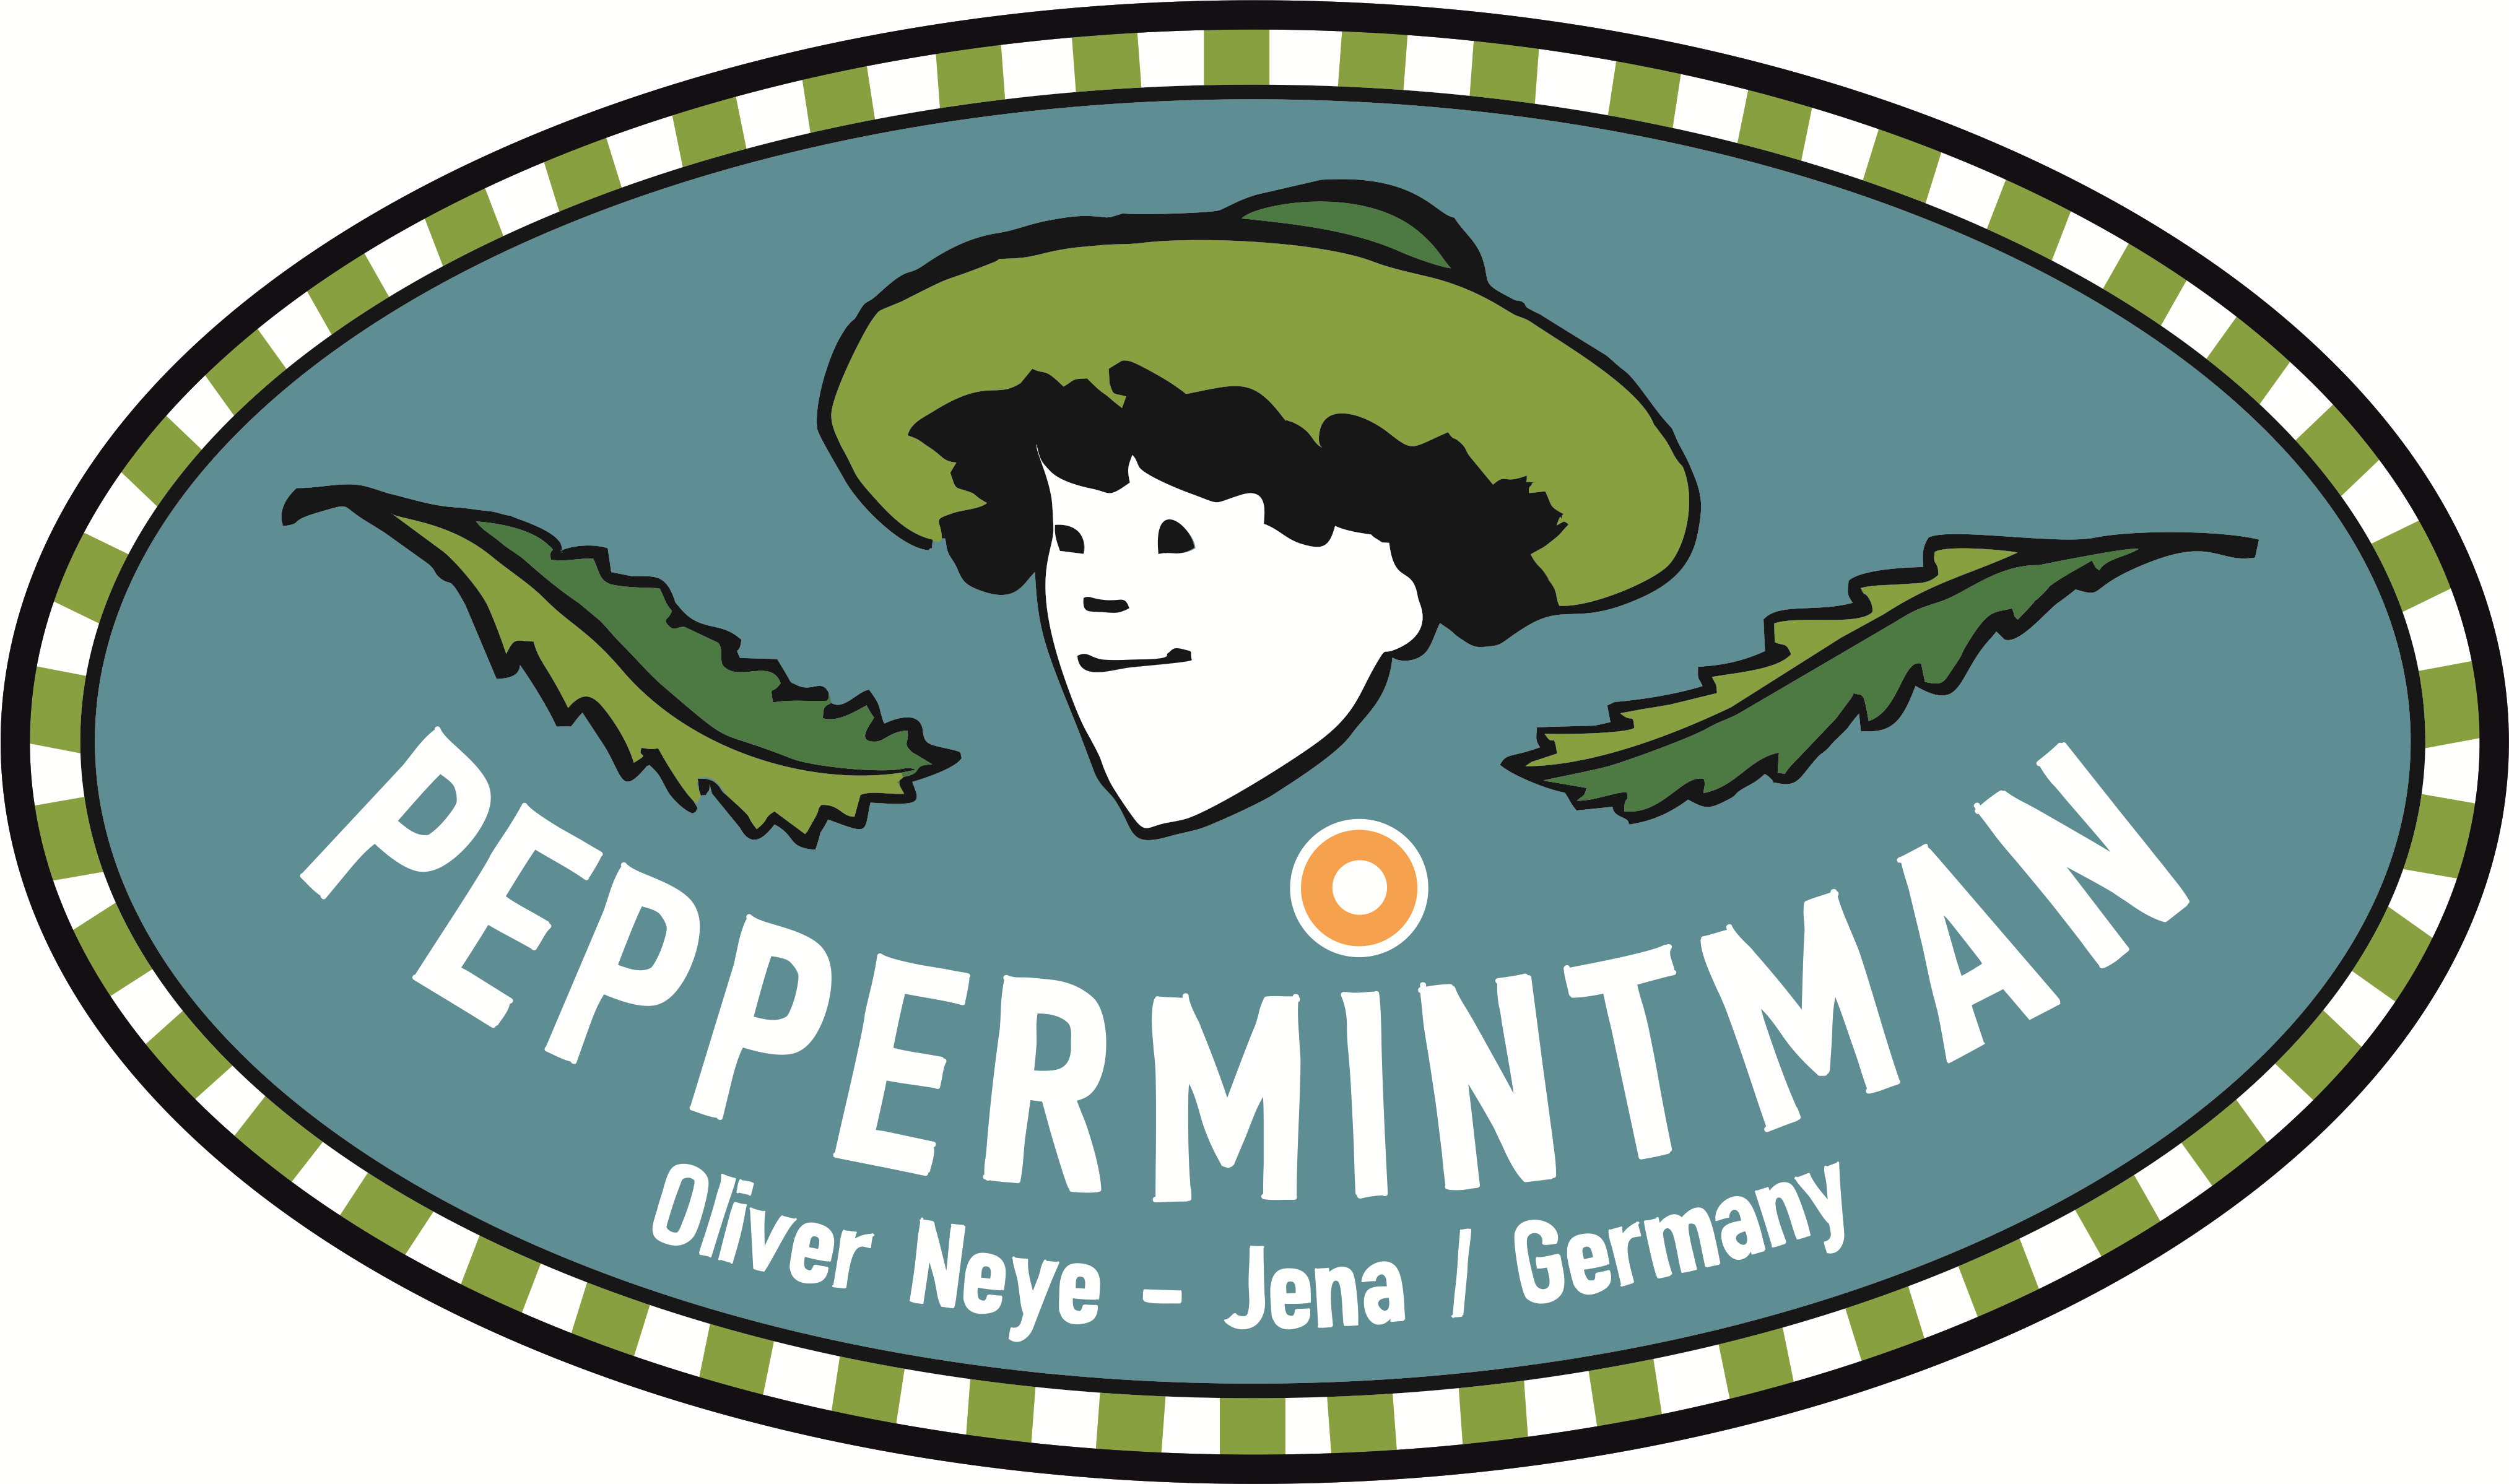 PeppermintMan